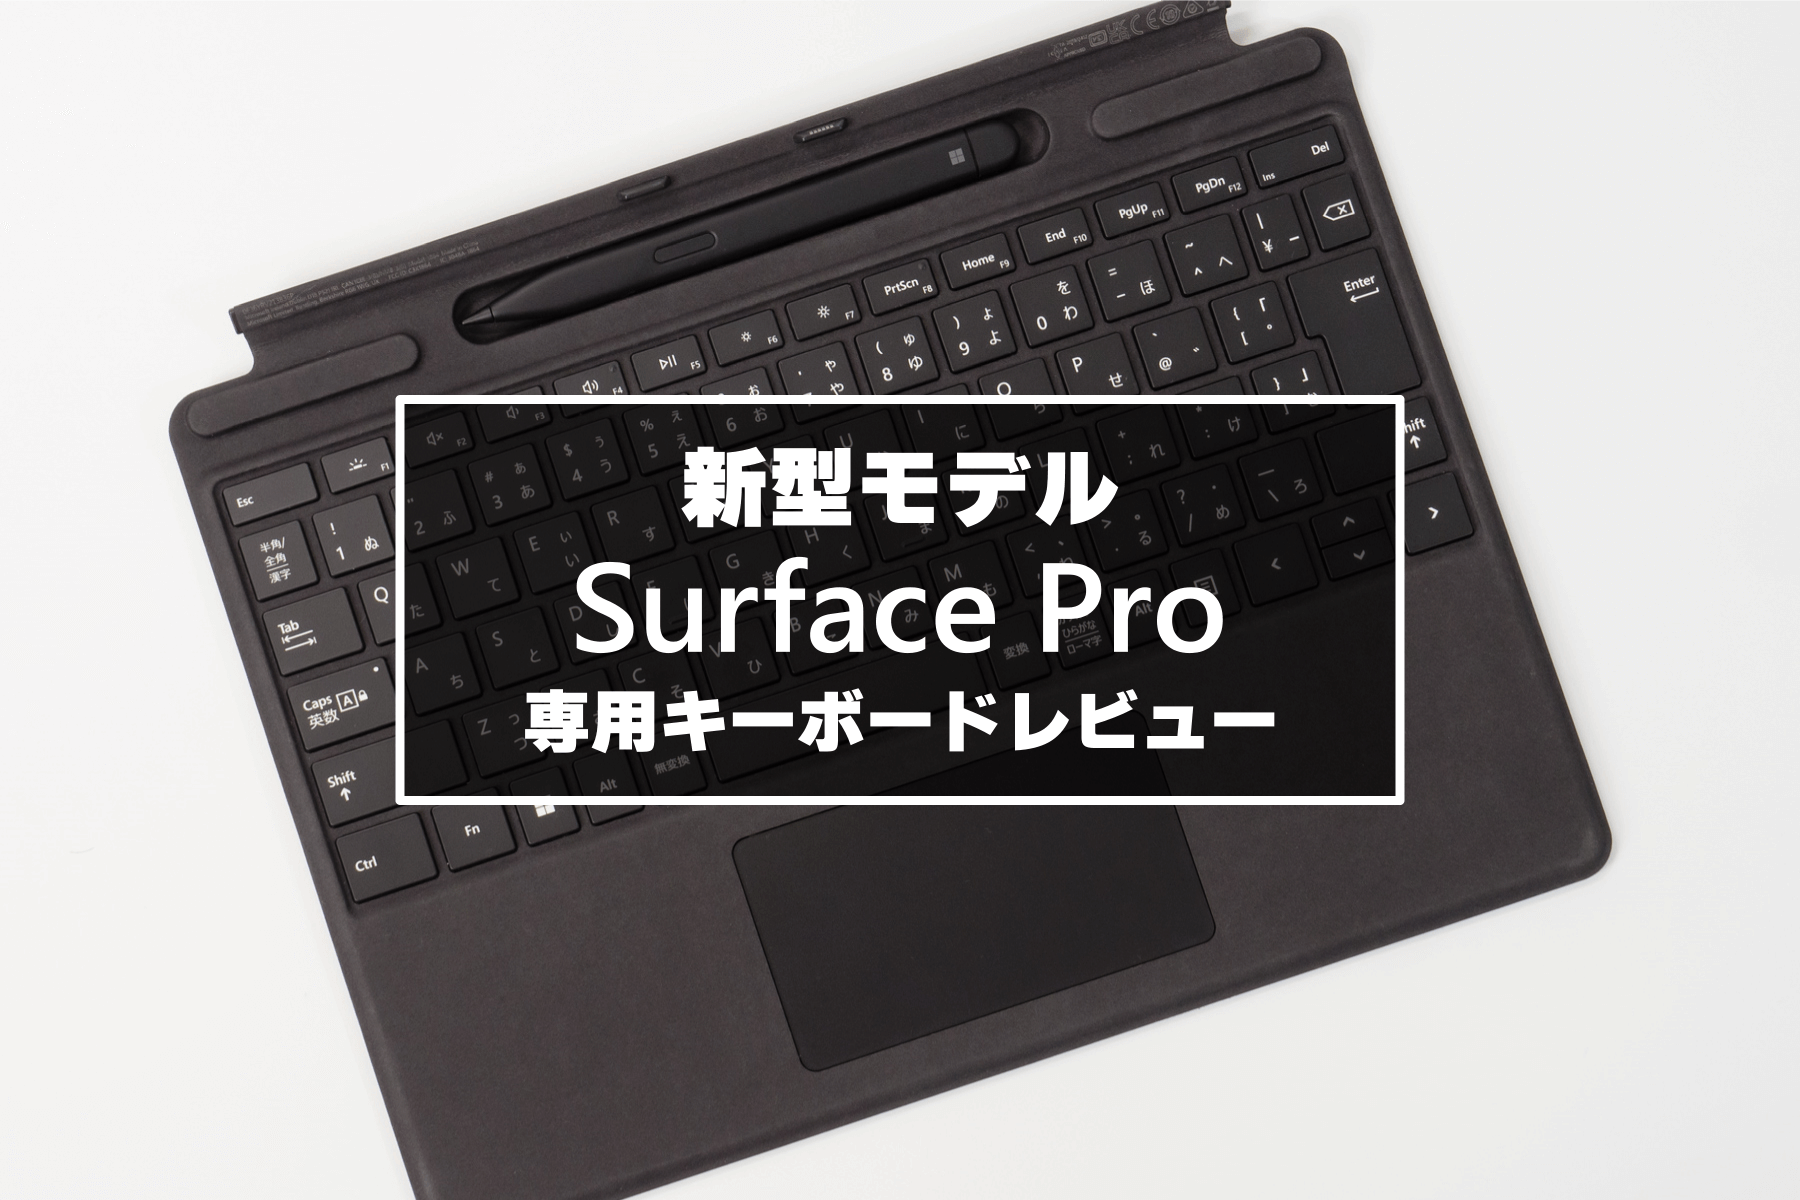 クリアランス最安 マイクロソフト Signature Pro Surface 8XA-00019 PC周辺機器